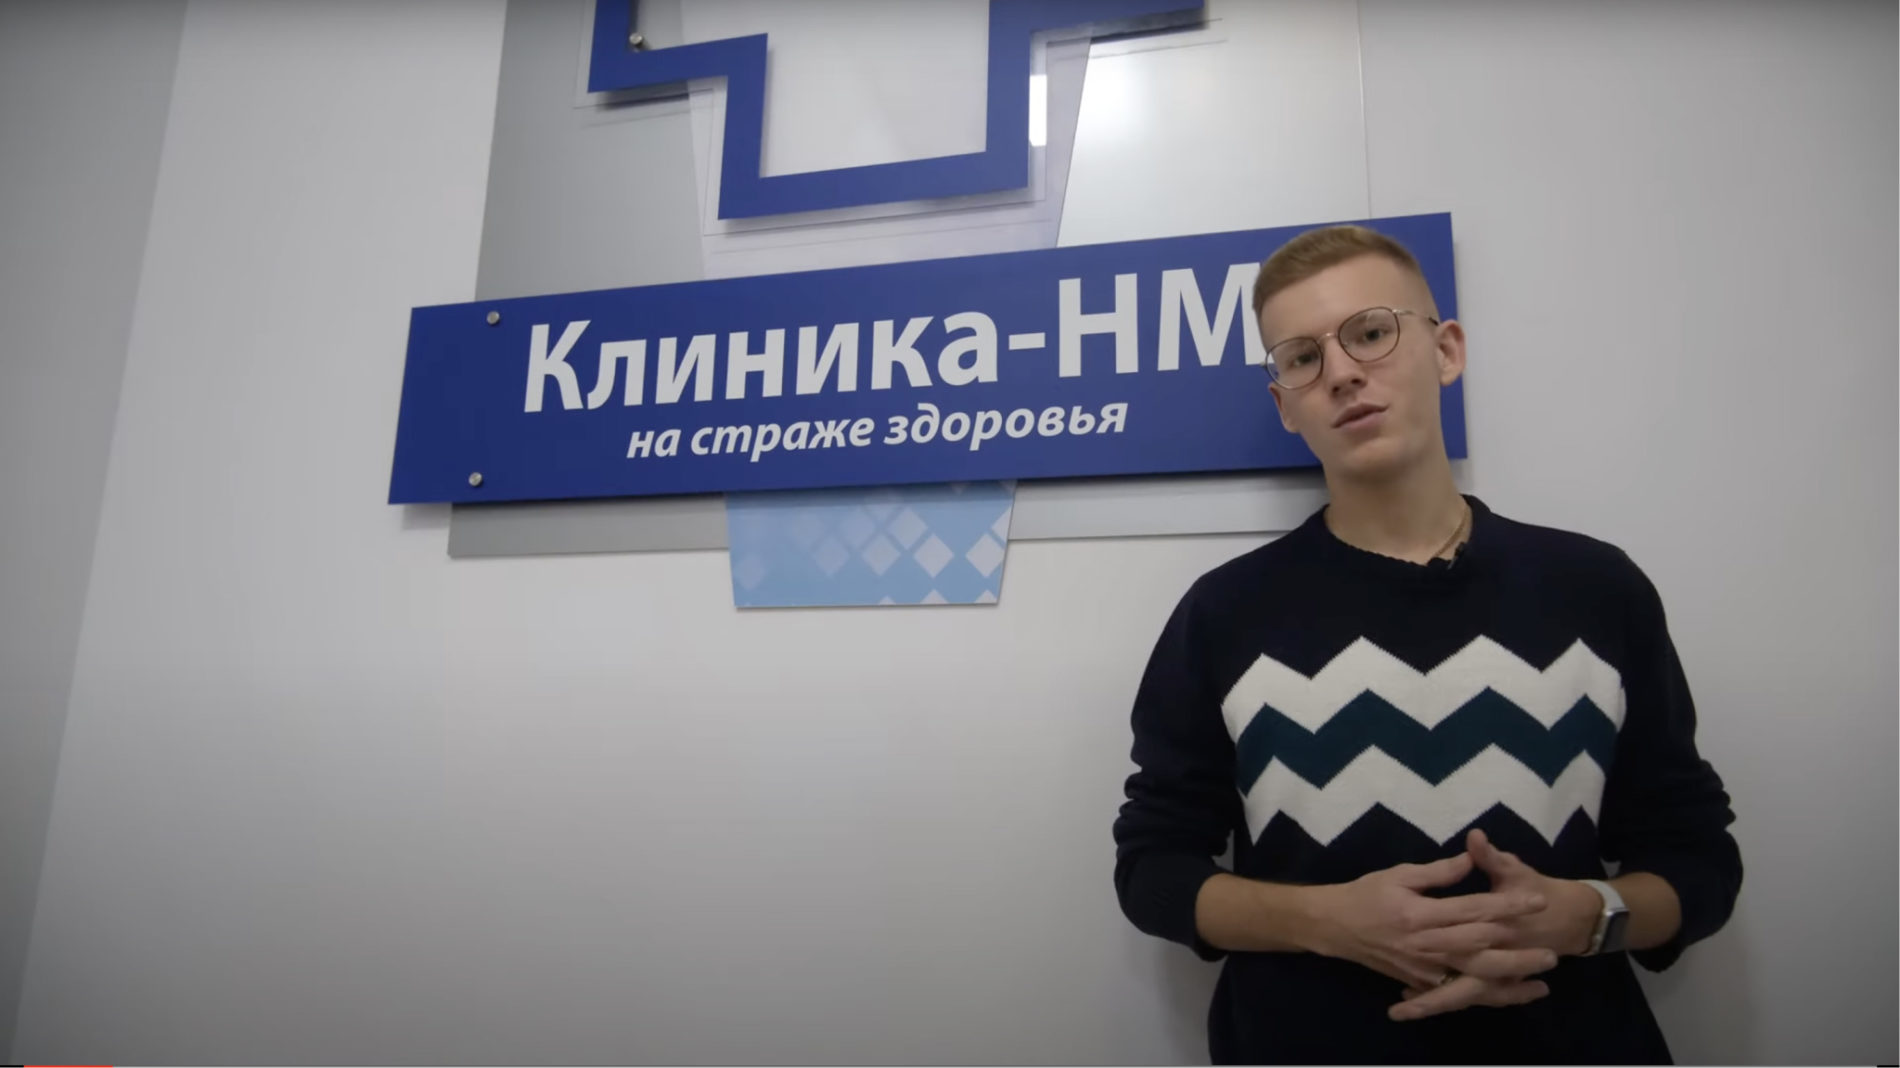 Стукалов Вадим в гостях у Клиника -НМ